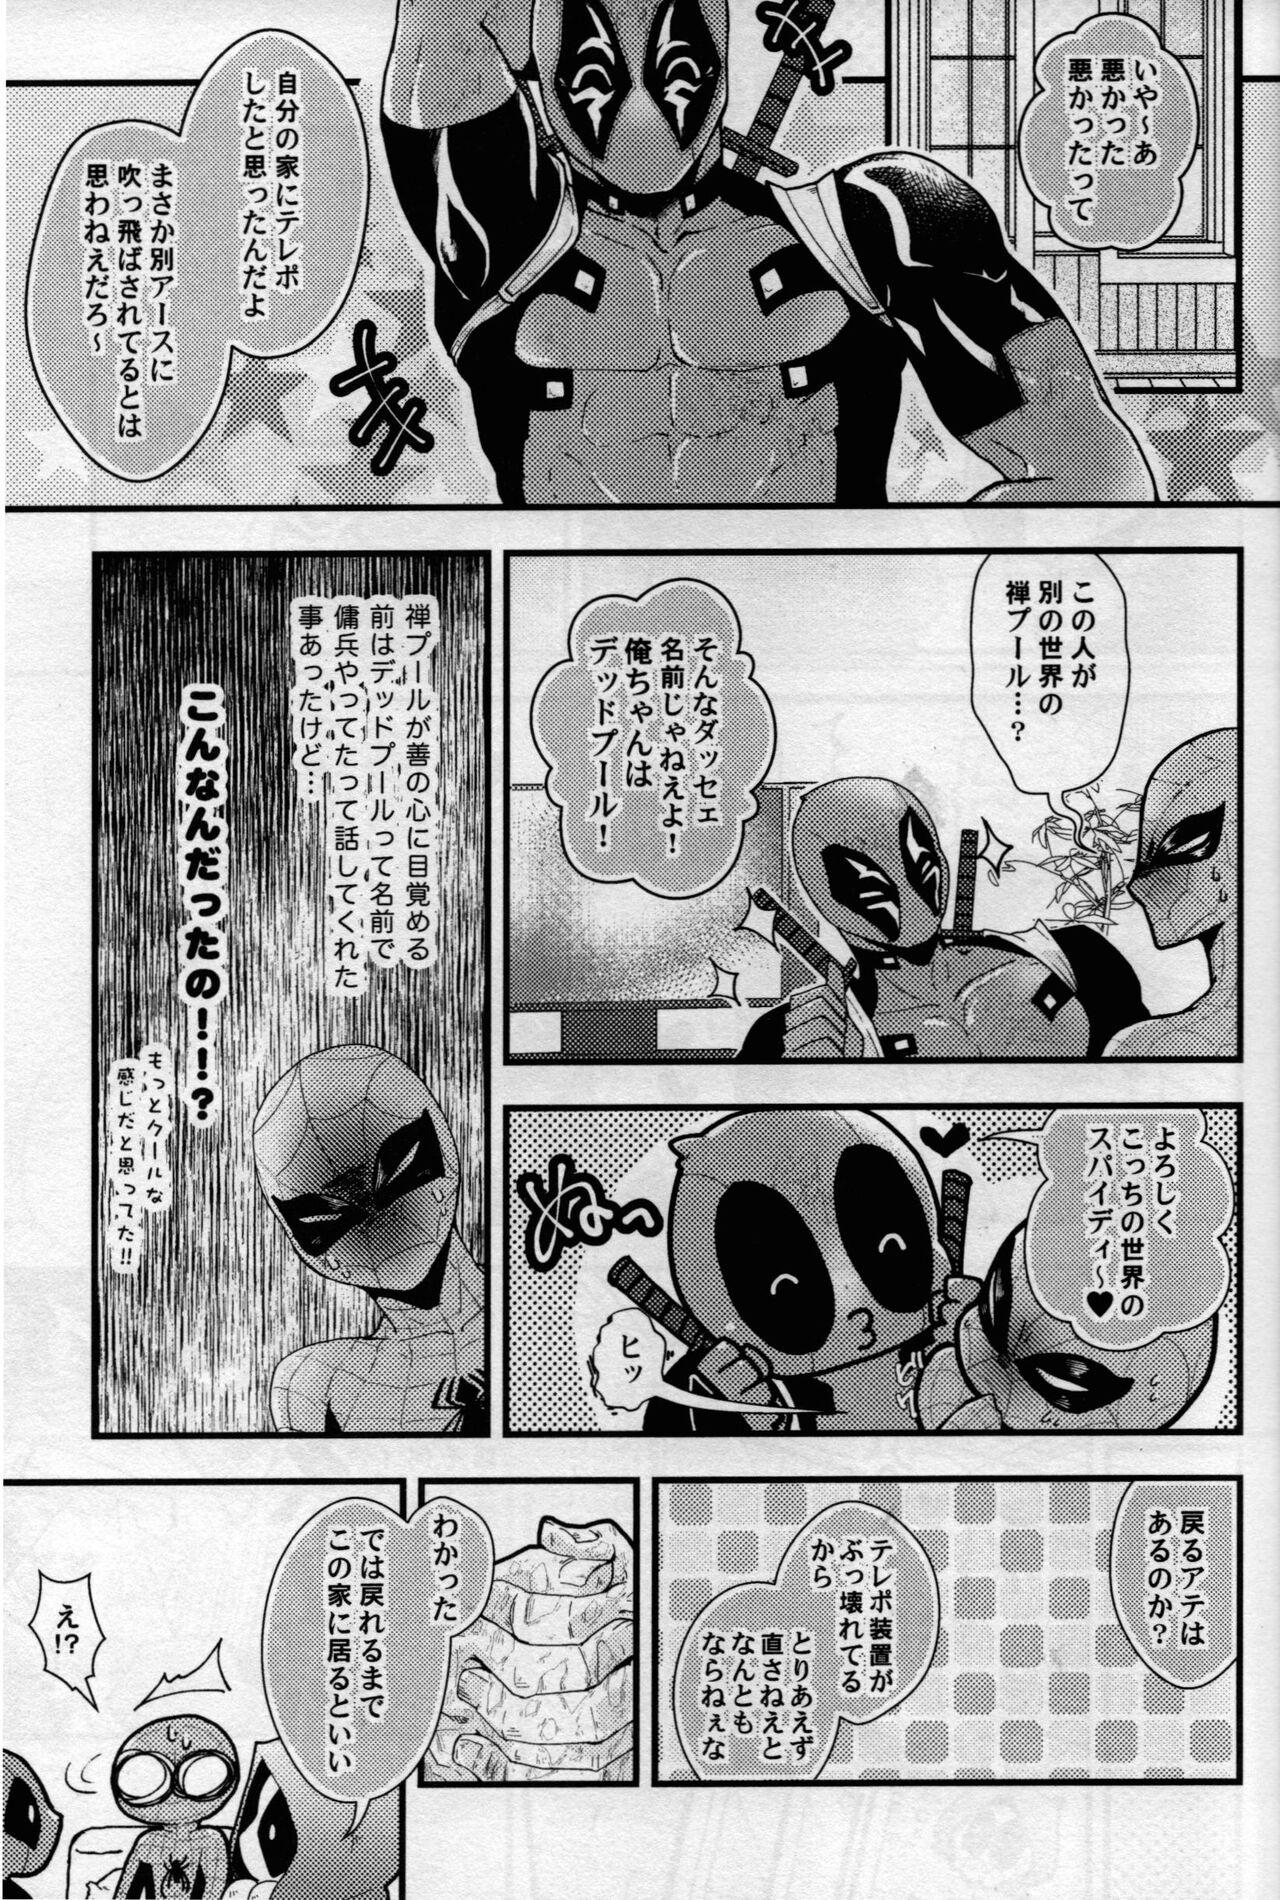 Cuckold maruchiba → suraba → zu maruchibasurabazu - Spider man Best Blow Job - Page 6